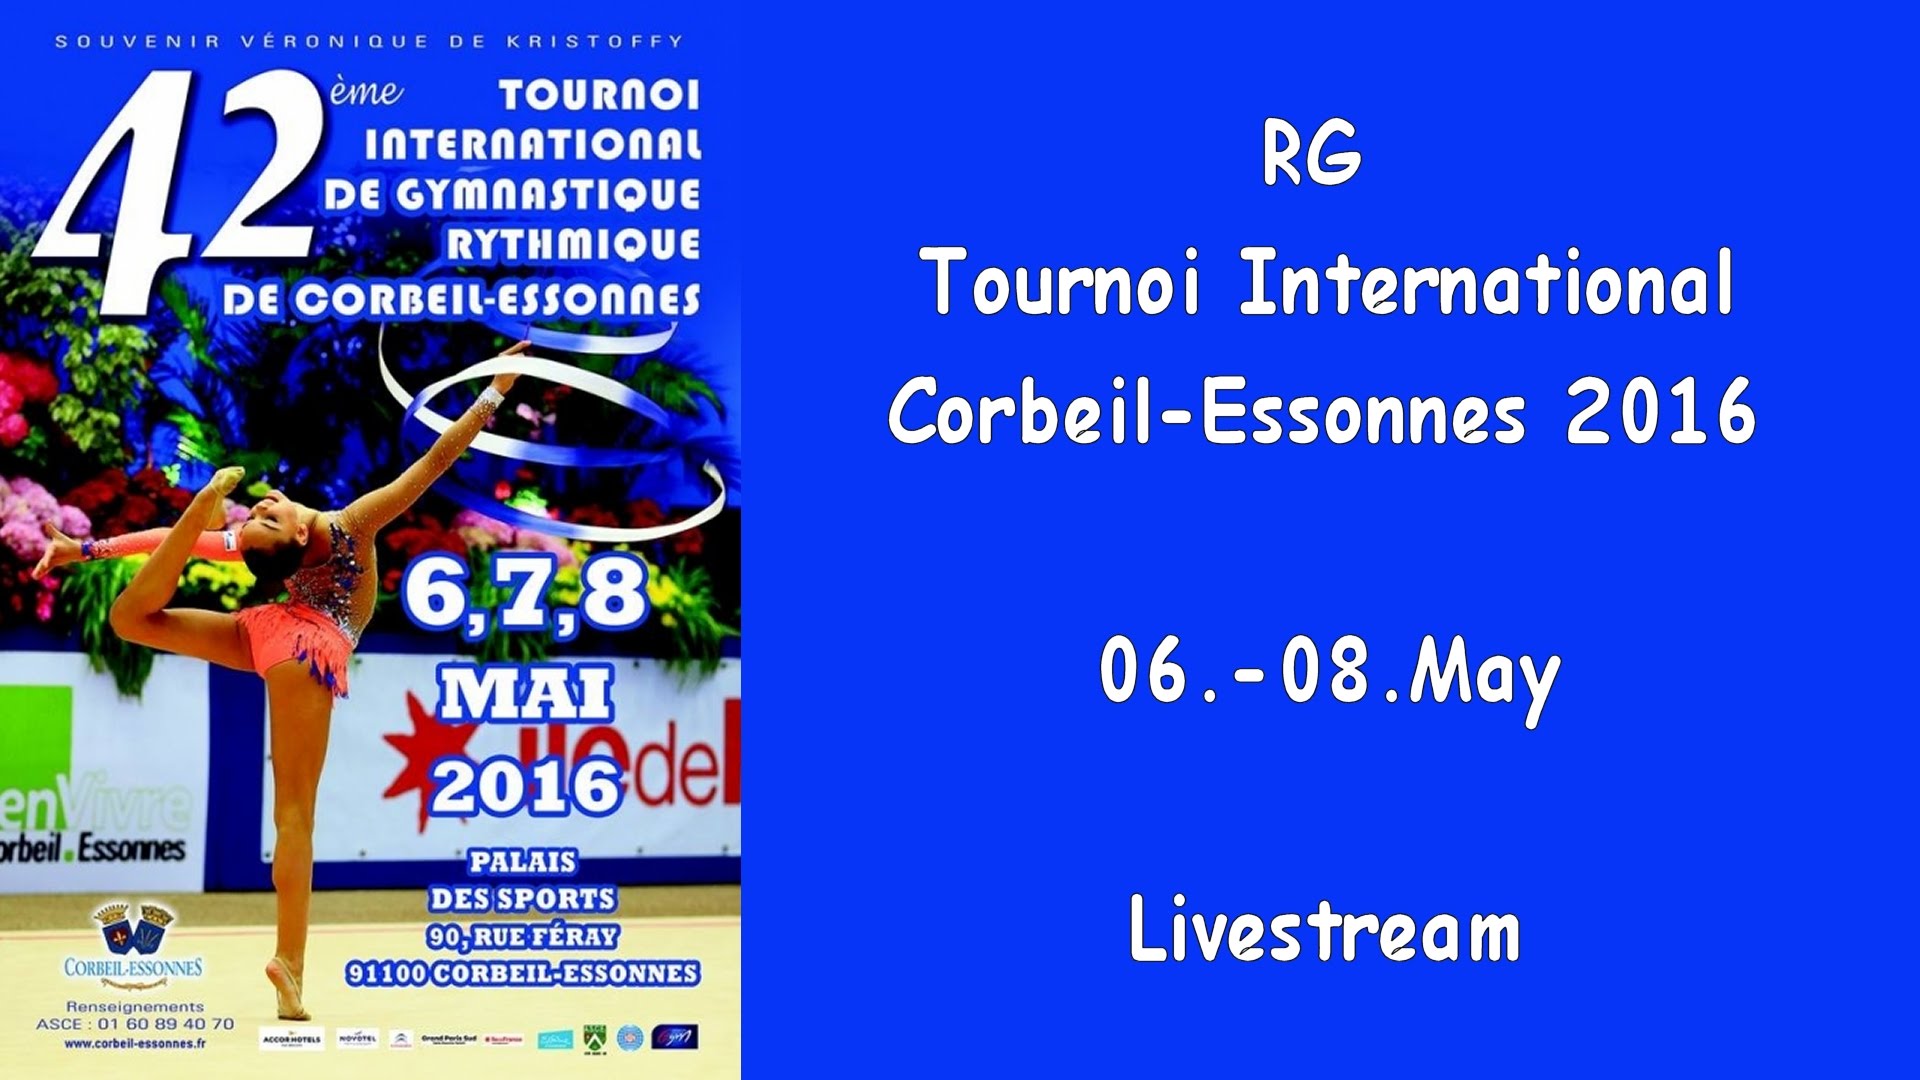 Corbeil-Essonnes 2016 Live